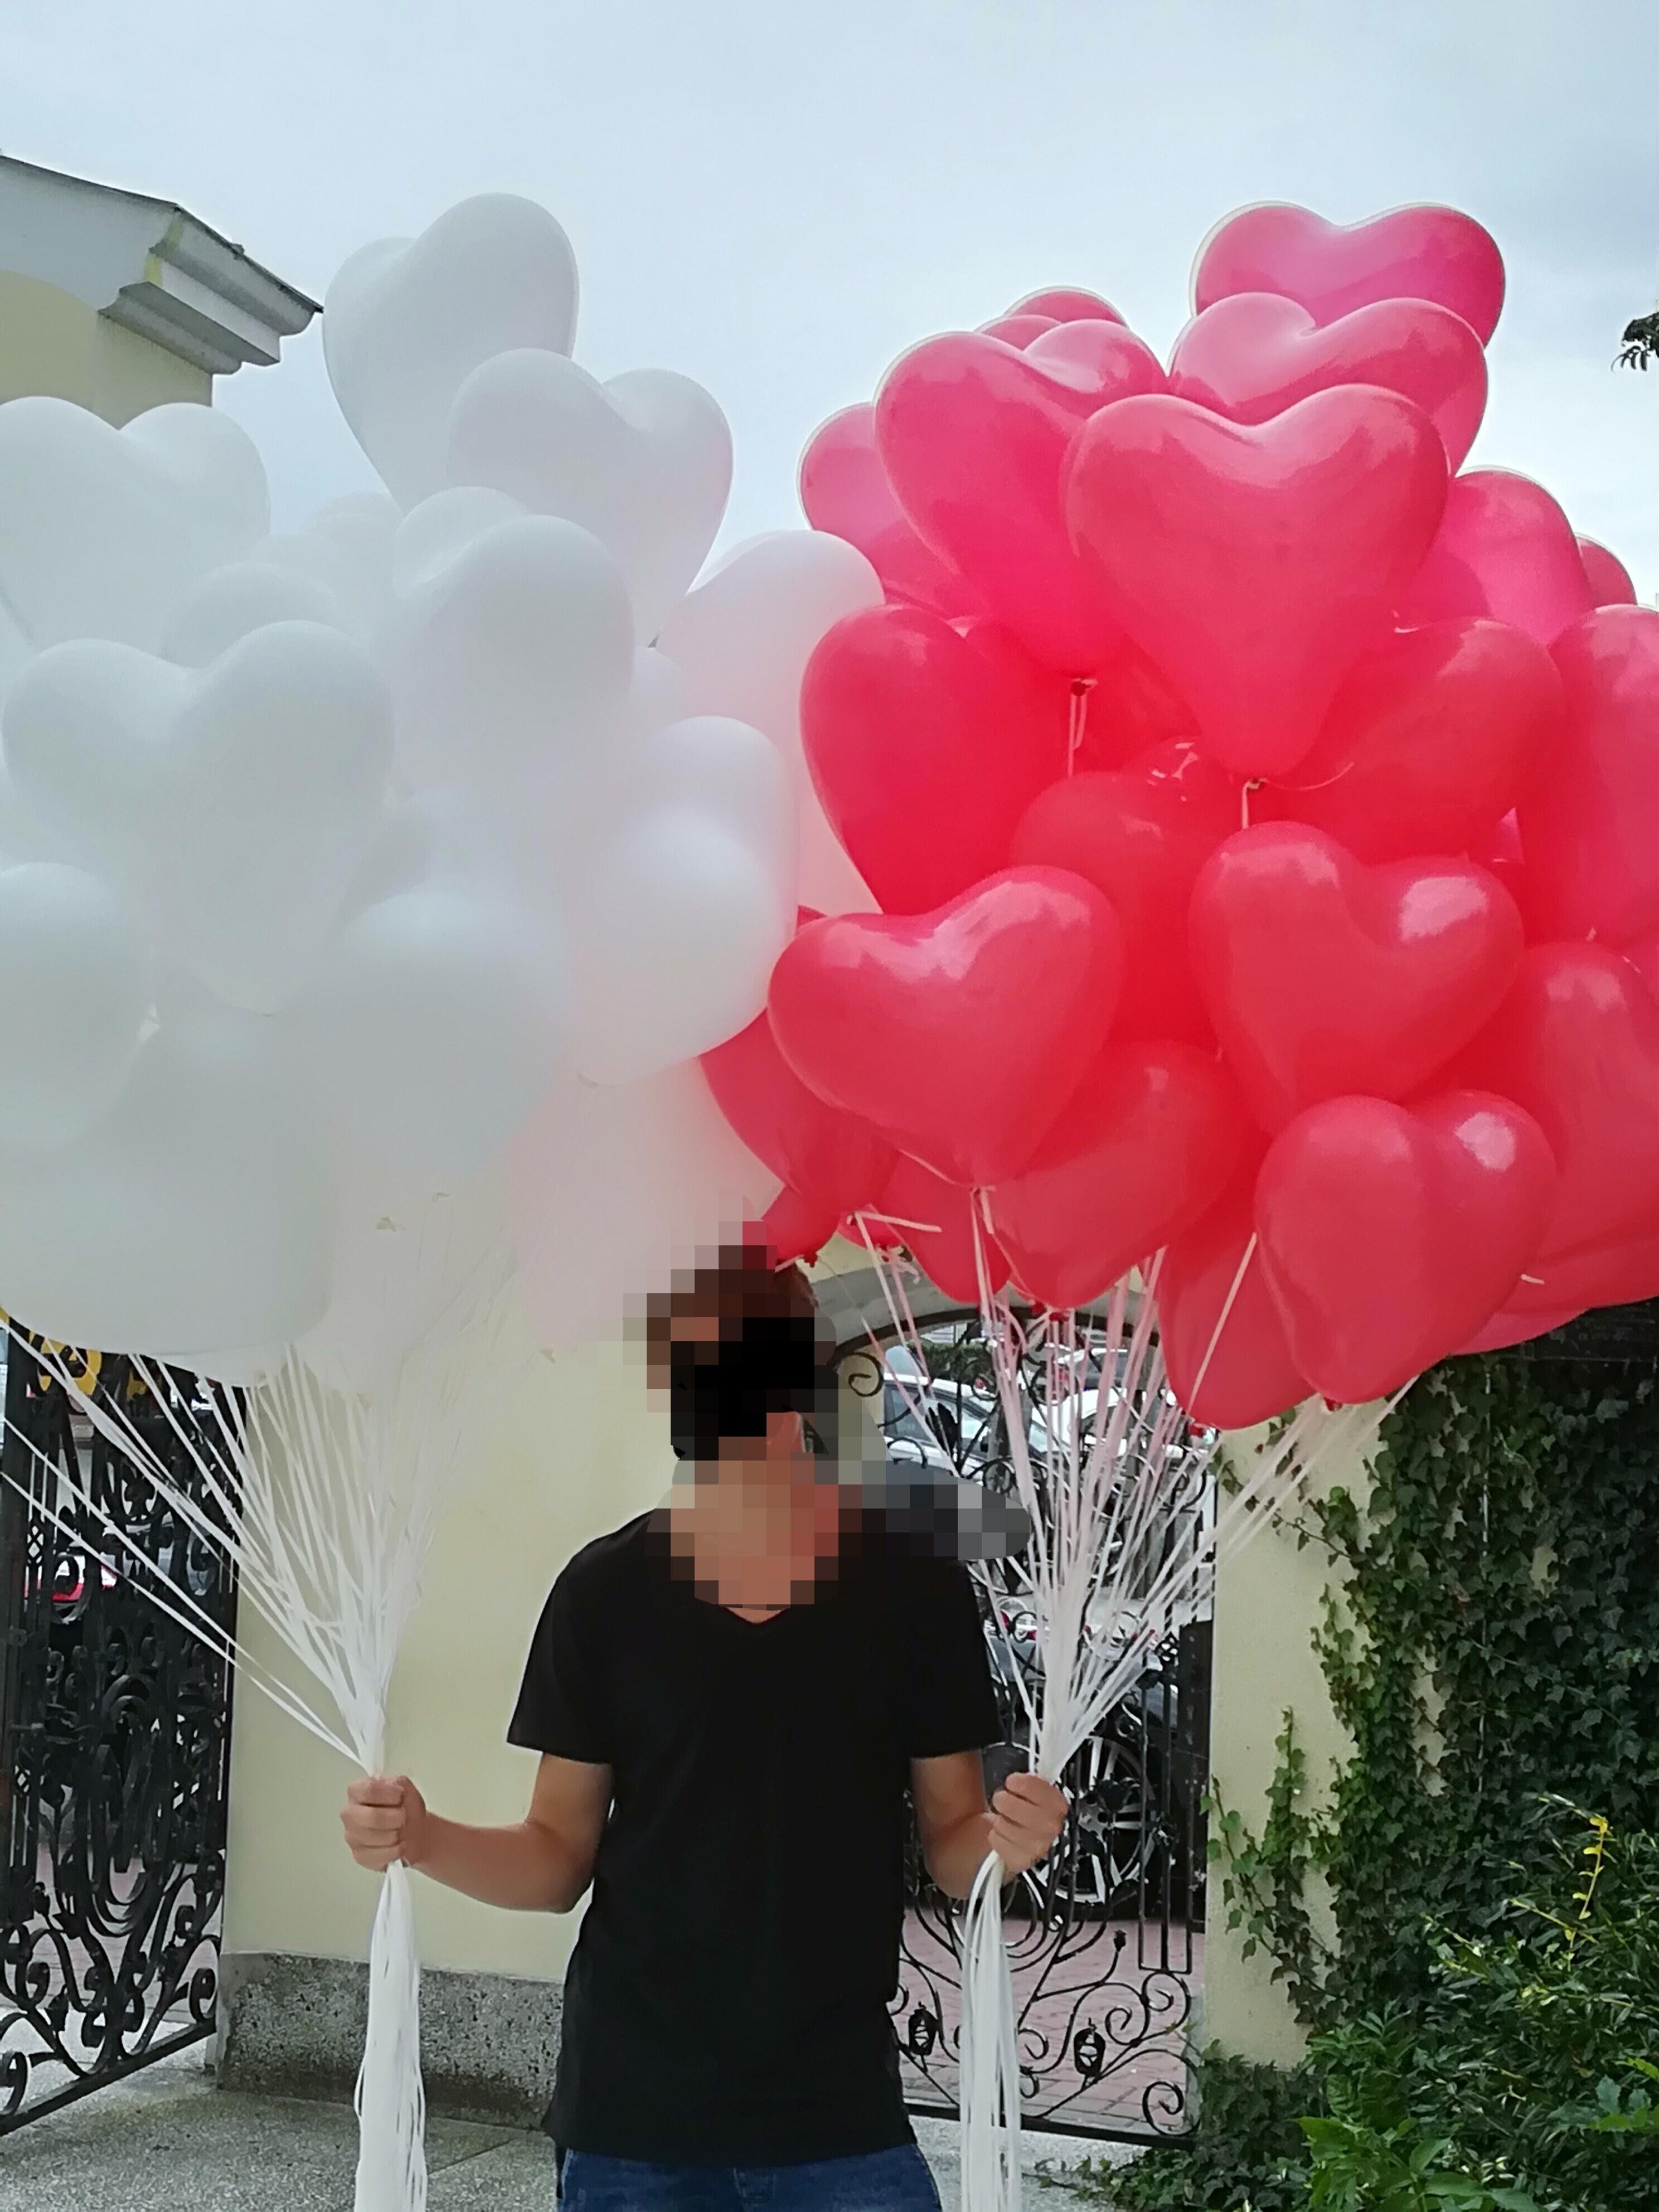 Balony z helem